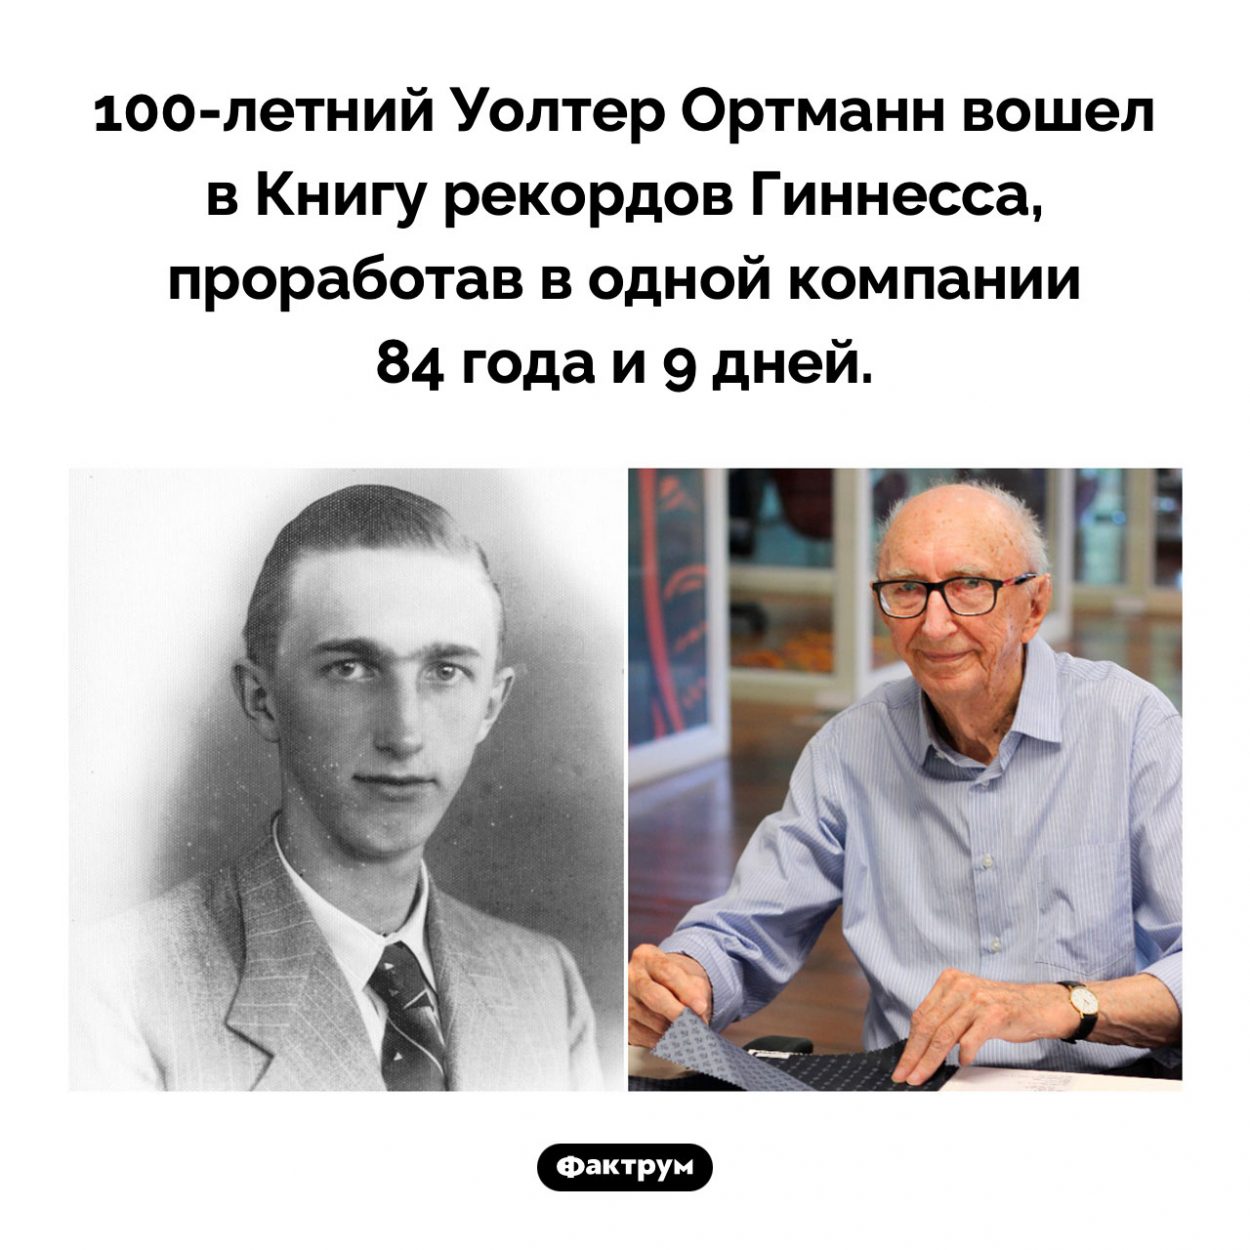 Самый преданный сотрудник. 100-летний Уолтер Ортманн вошел в Книгу рекордов Гиннесса, проработав в одной компании 84 года и 9 дней.